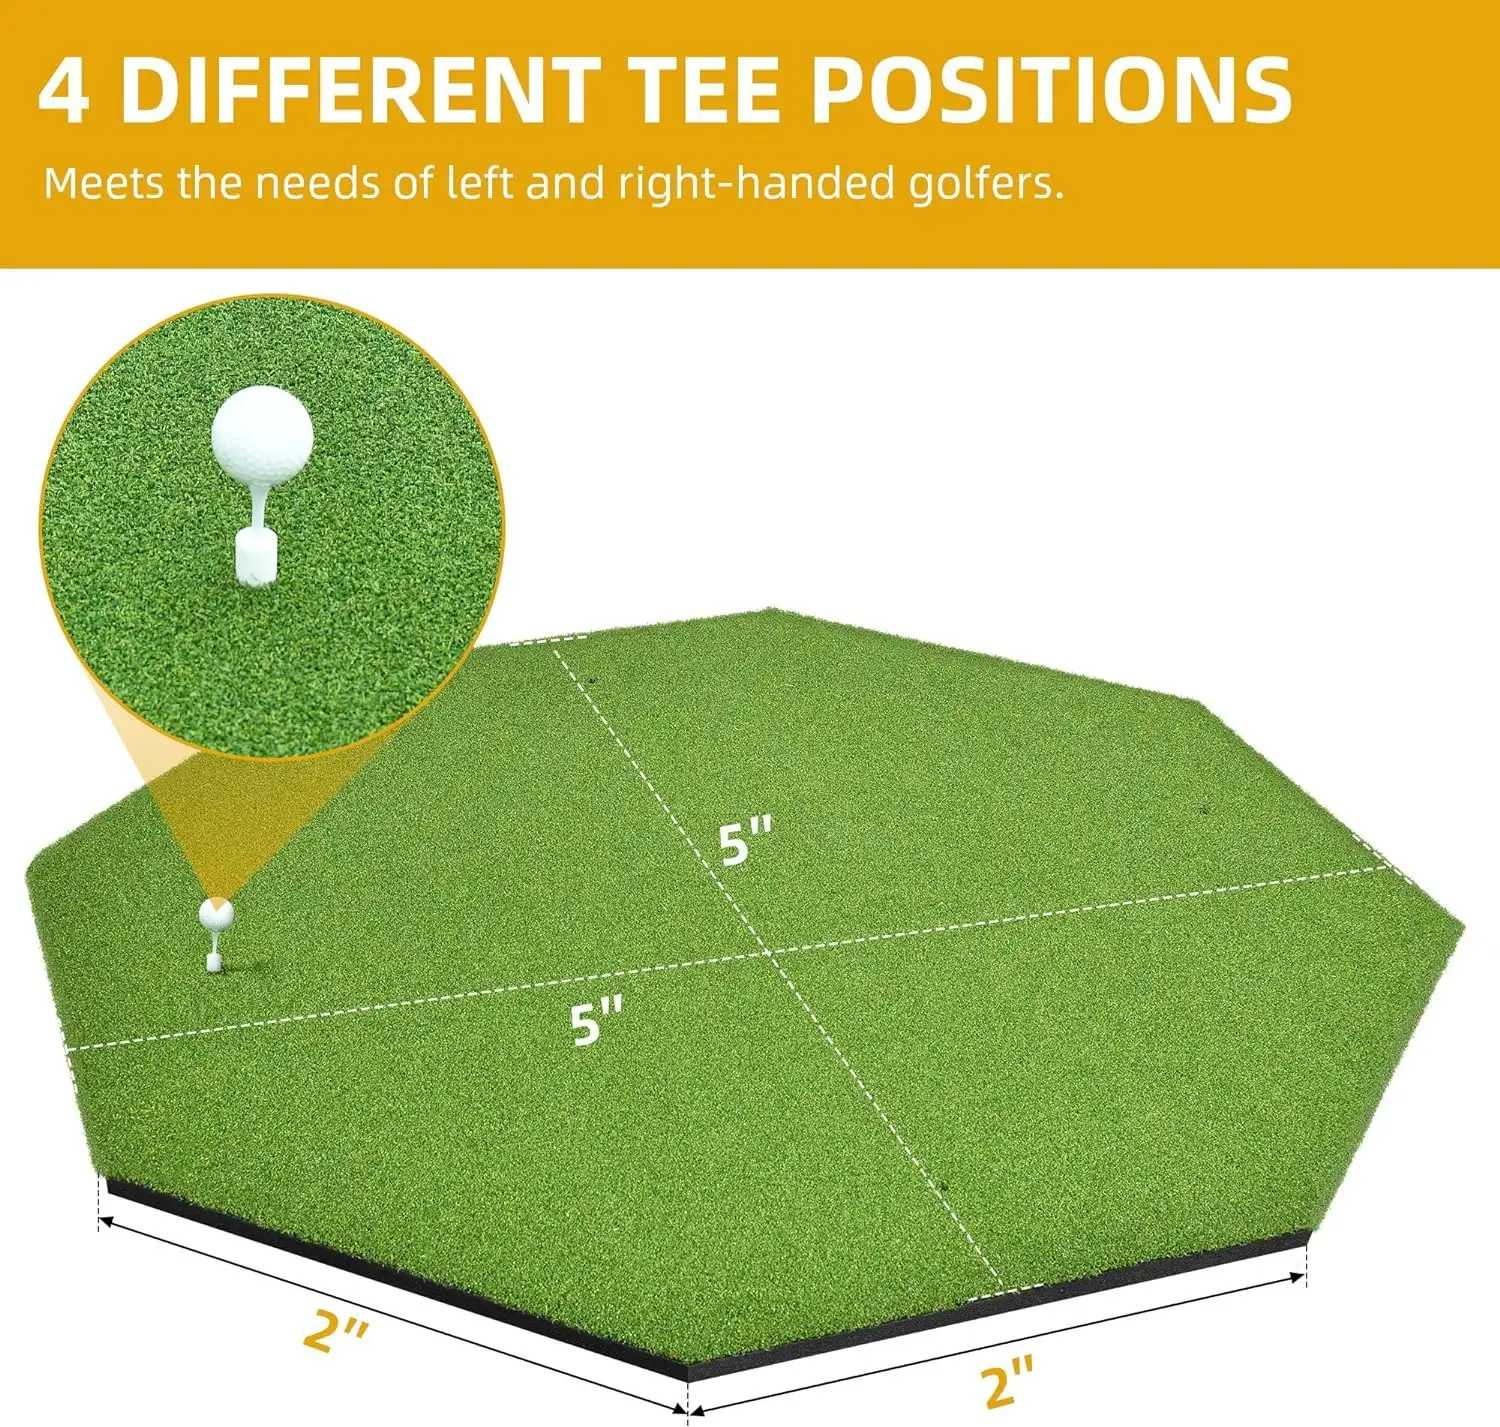 अभ्यास और प्रशिक्षण के लिए अष्टकोण आकार की गोल्फ हिटिंग मैट